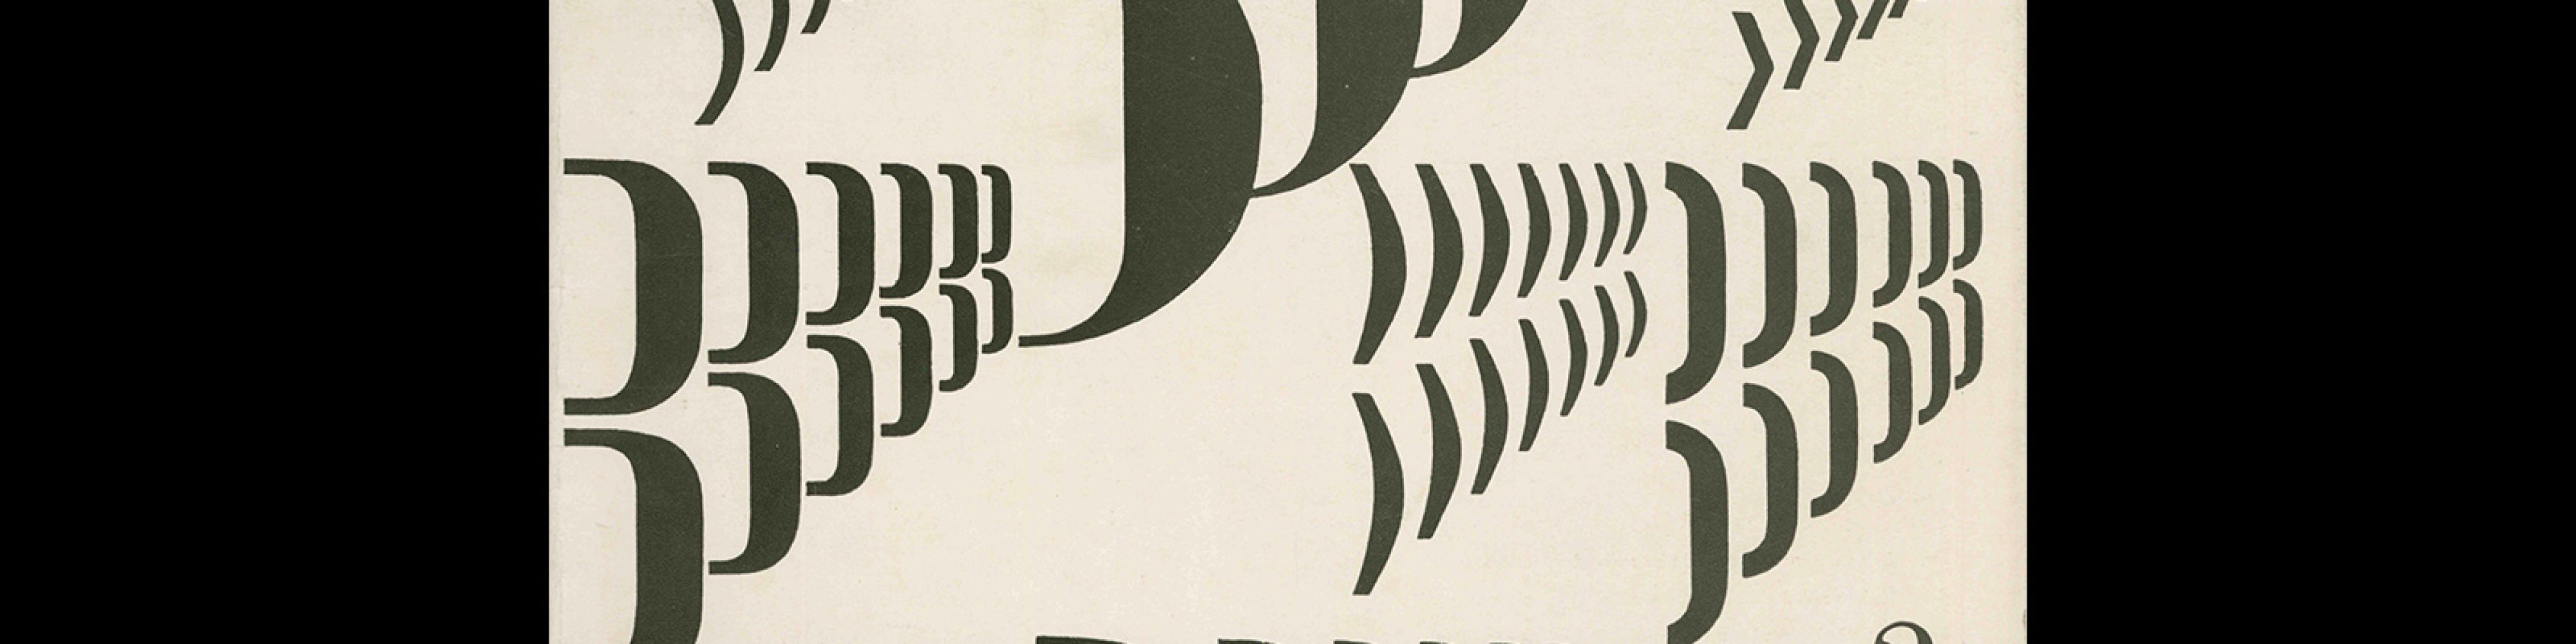 Typografia, ročník 70, 03, 1967. Cover design by Jiří Rathouský